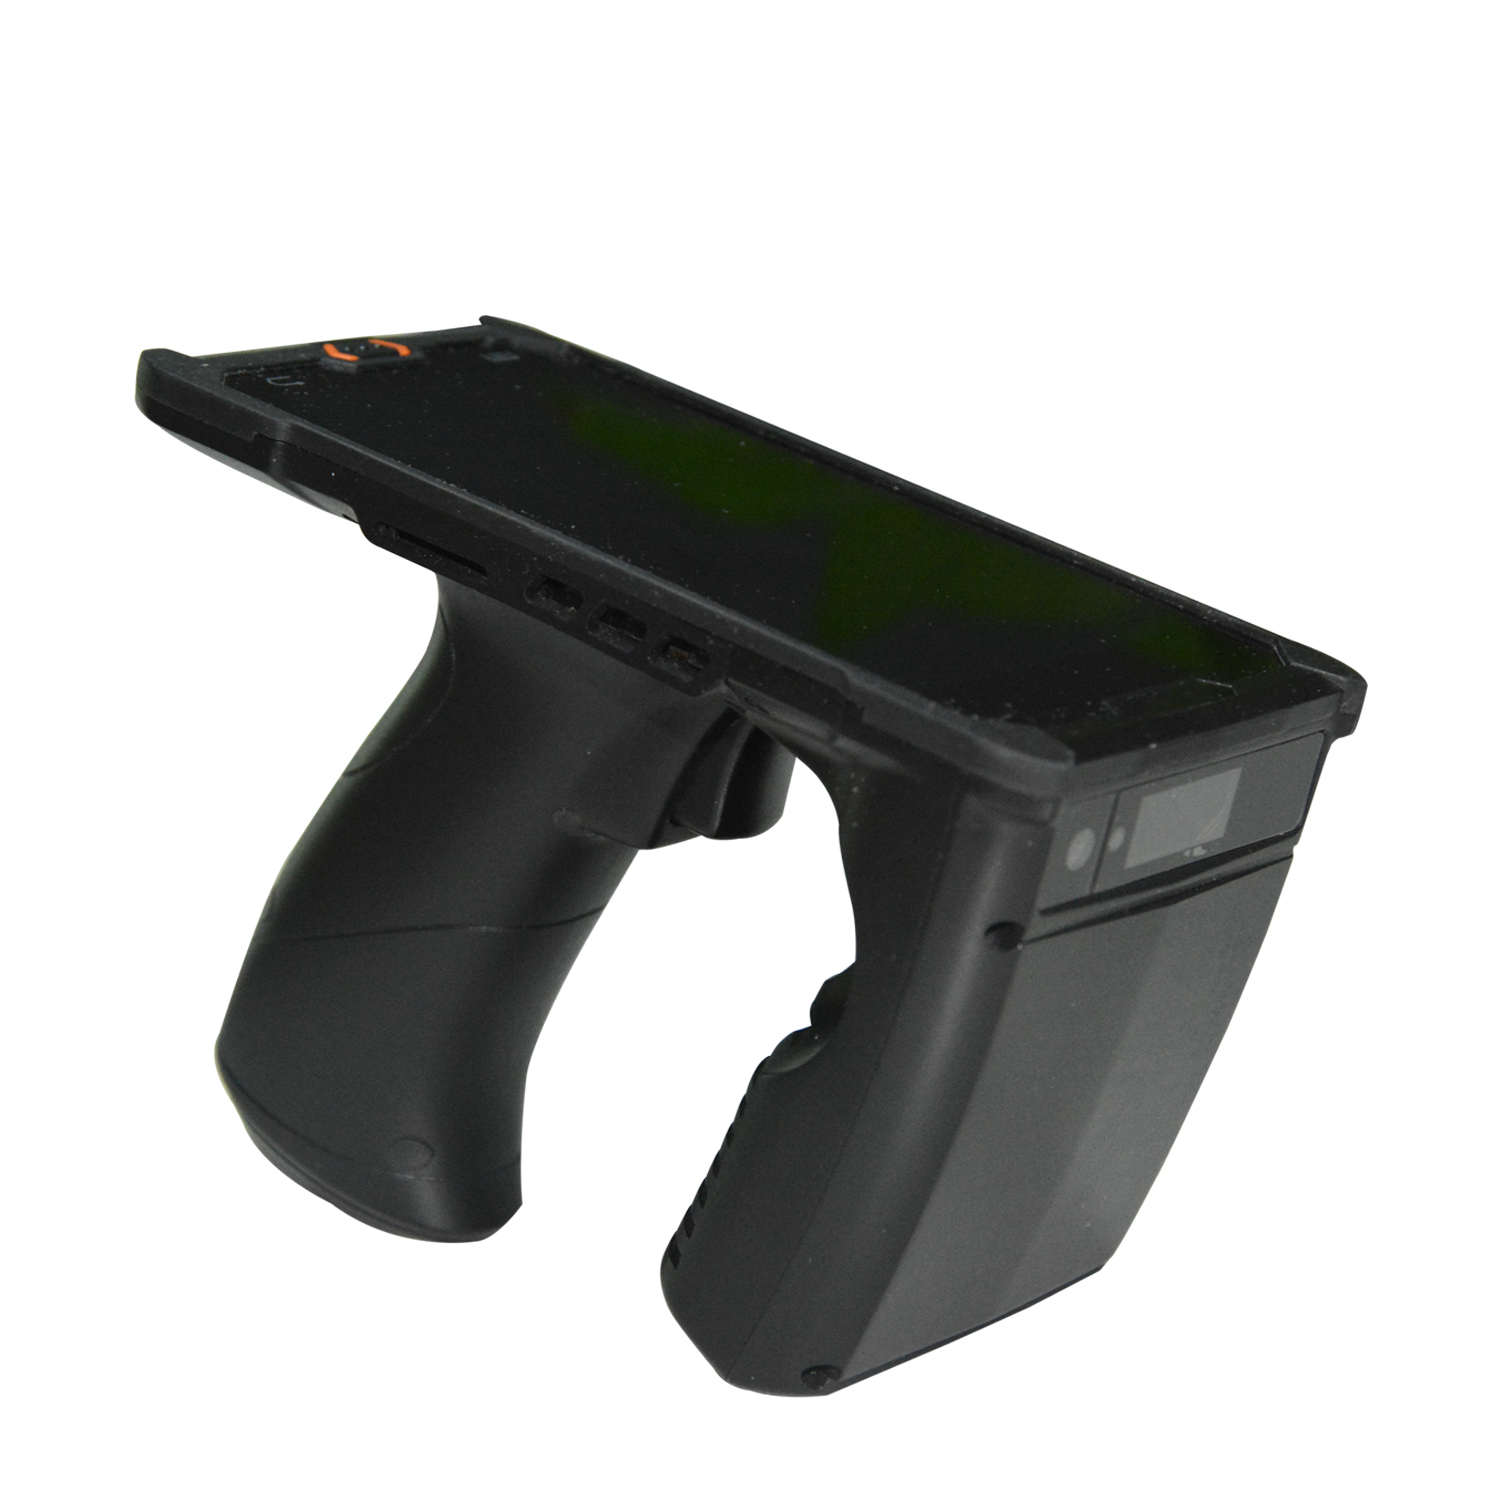 Colector de datos PDA del PDA RFID de HCC Android 9,0 para la frecuencia ultraelevada de Warehouse C50